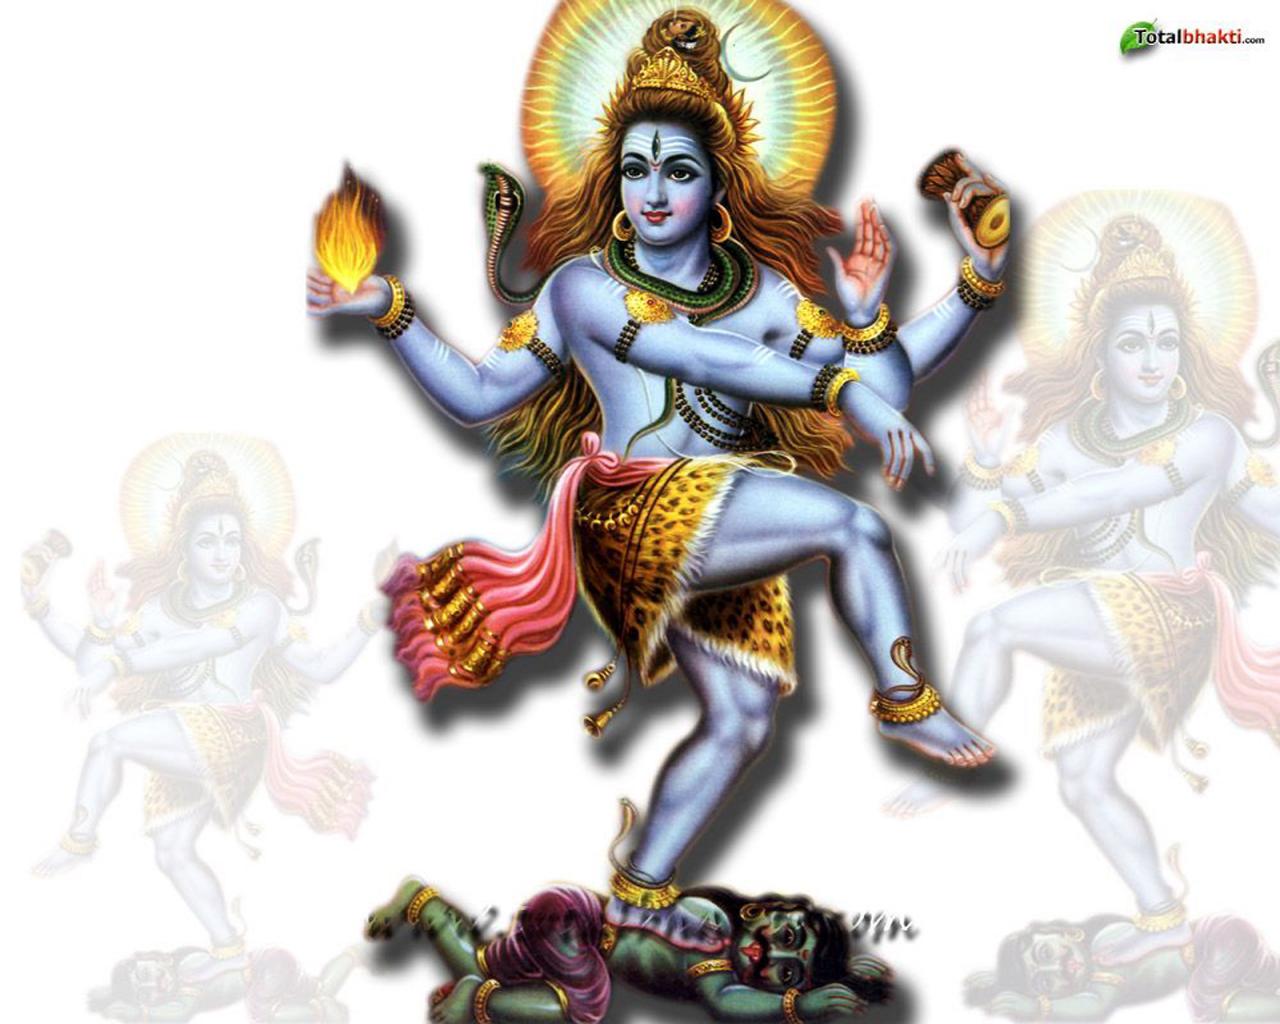 1280x1024 px & 1600x1024 px. Shiva ...